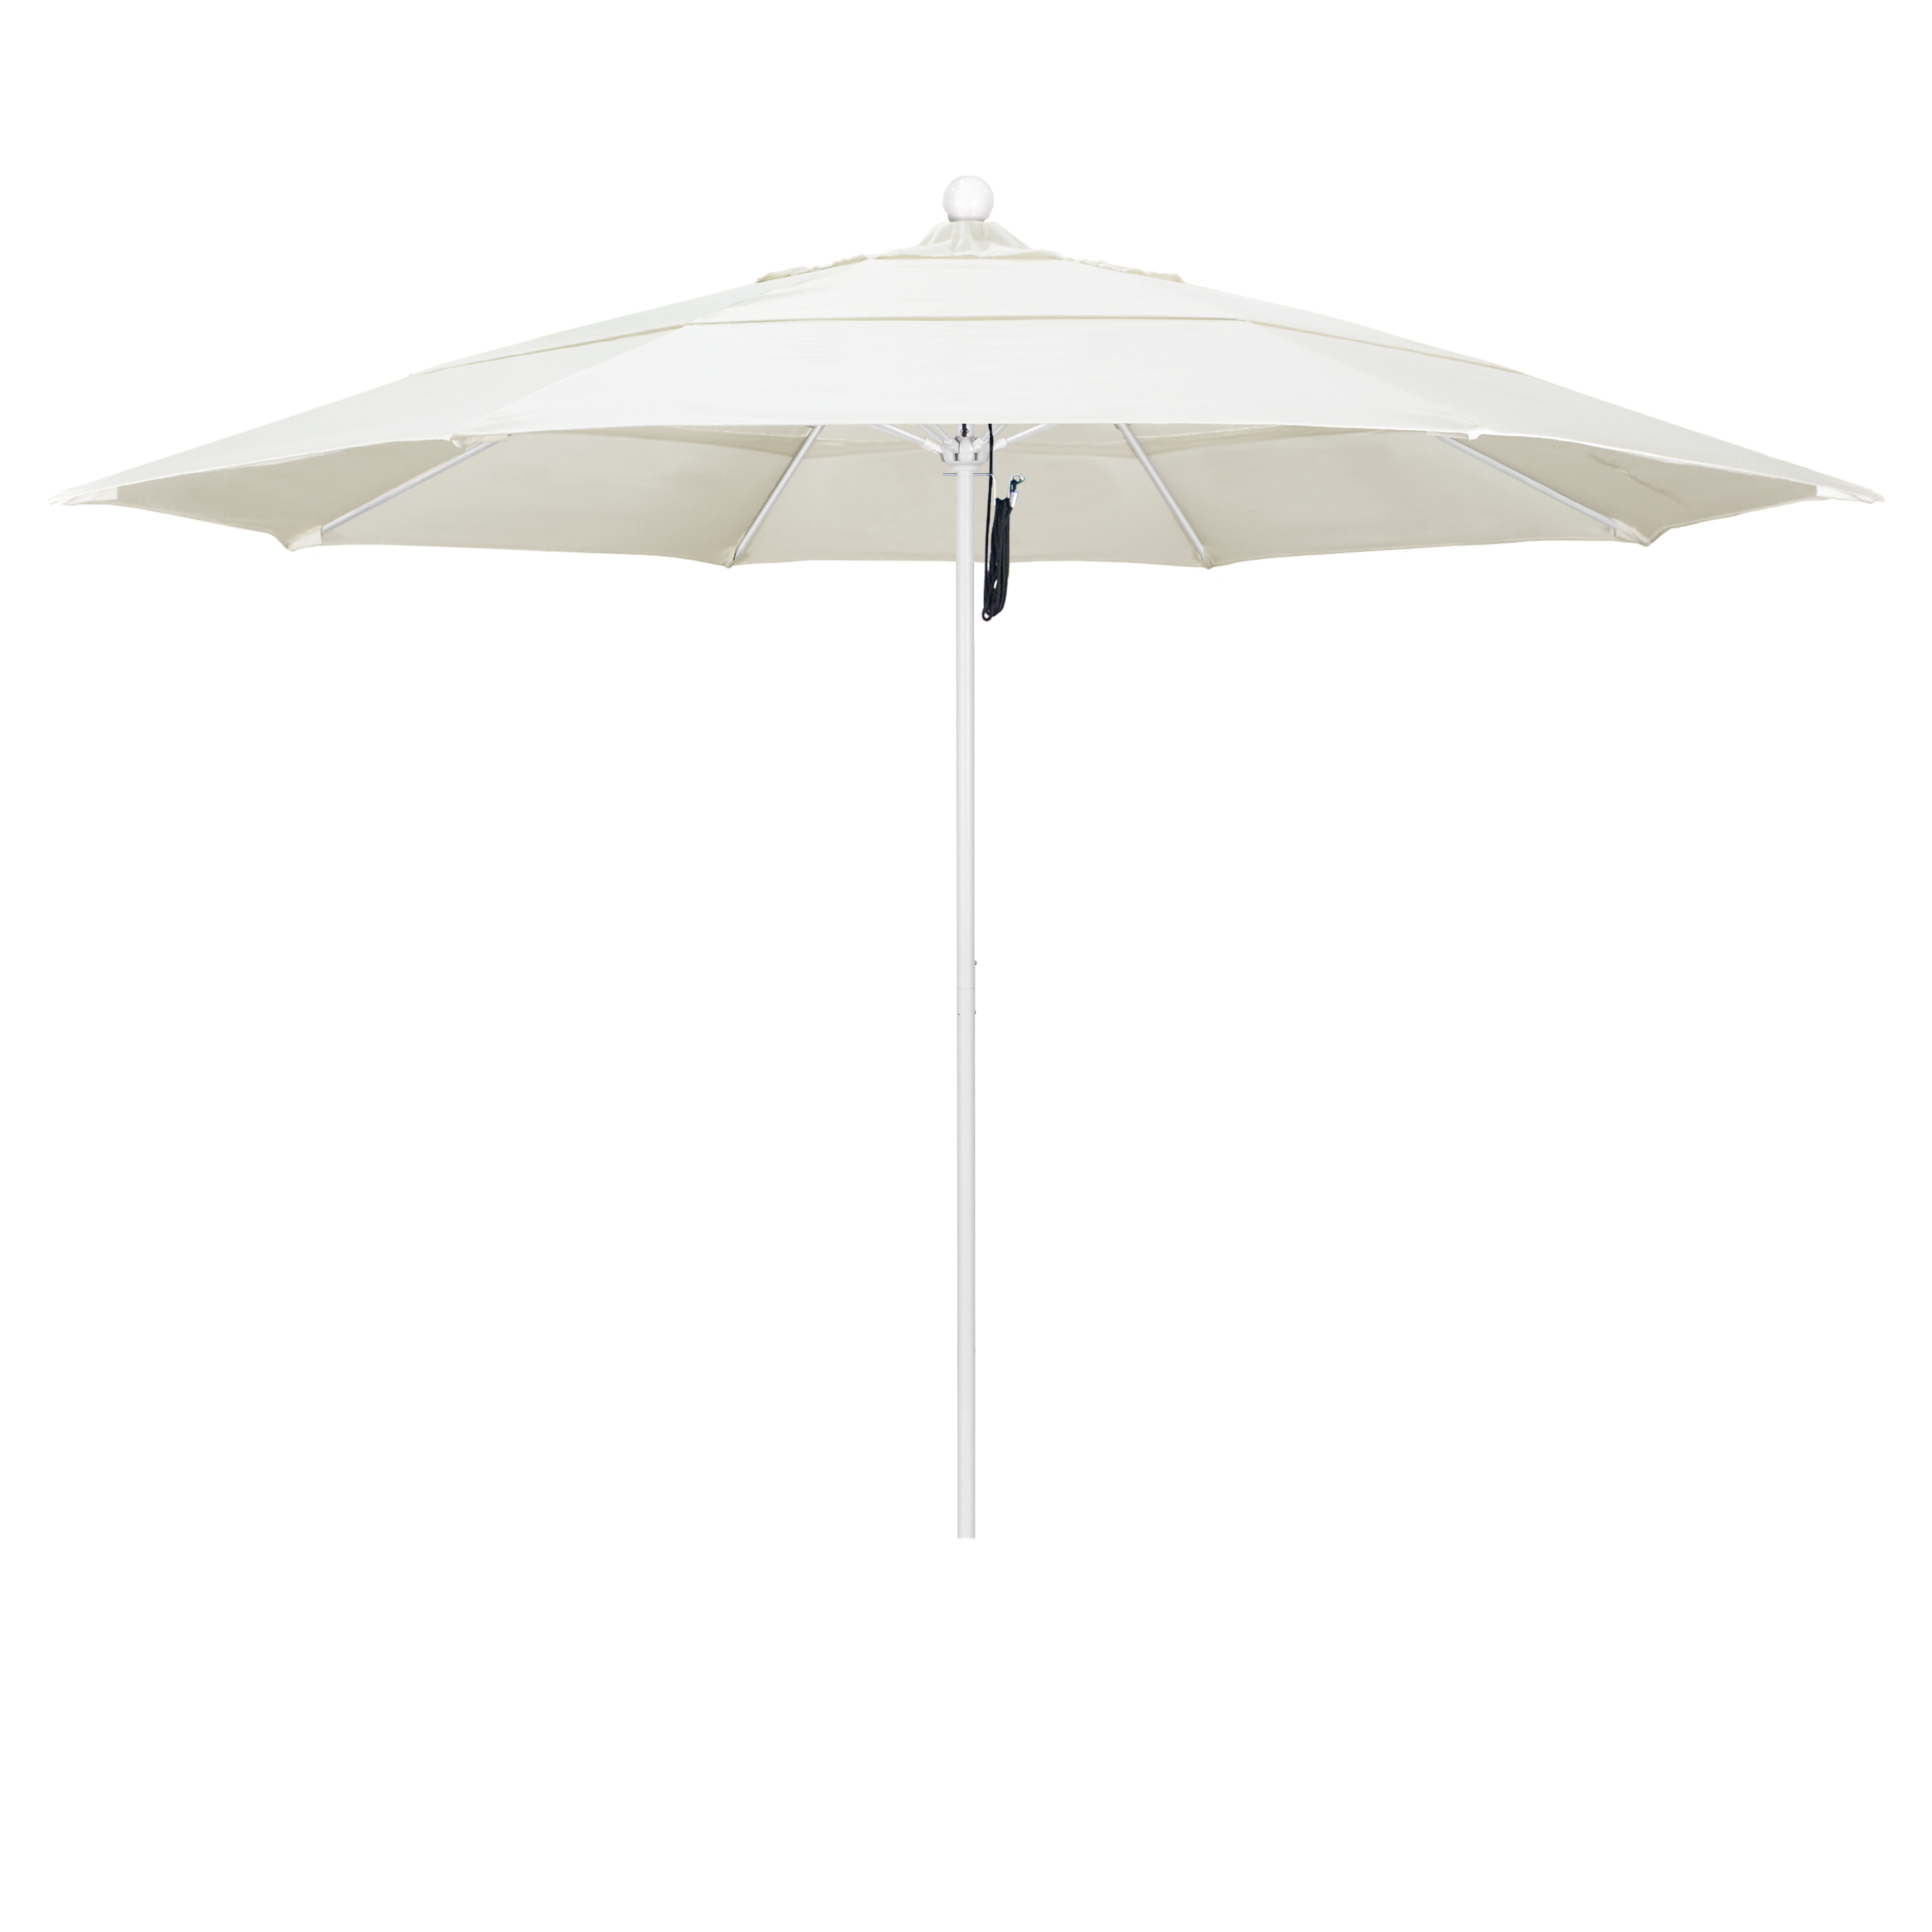 Alto118170-5453-dwv 11 Ft. Fiberglass Pulley Open Double Vents Market Umbrella - Matted White And Sunbrella-canvas